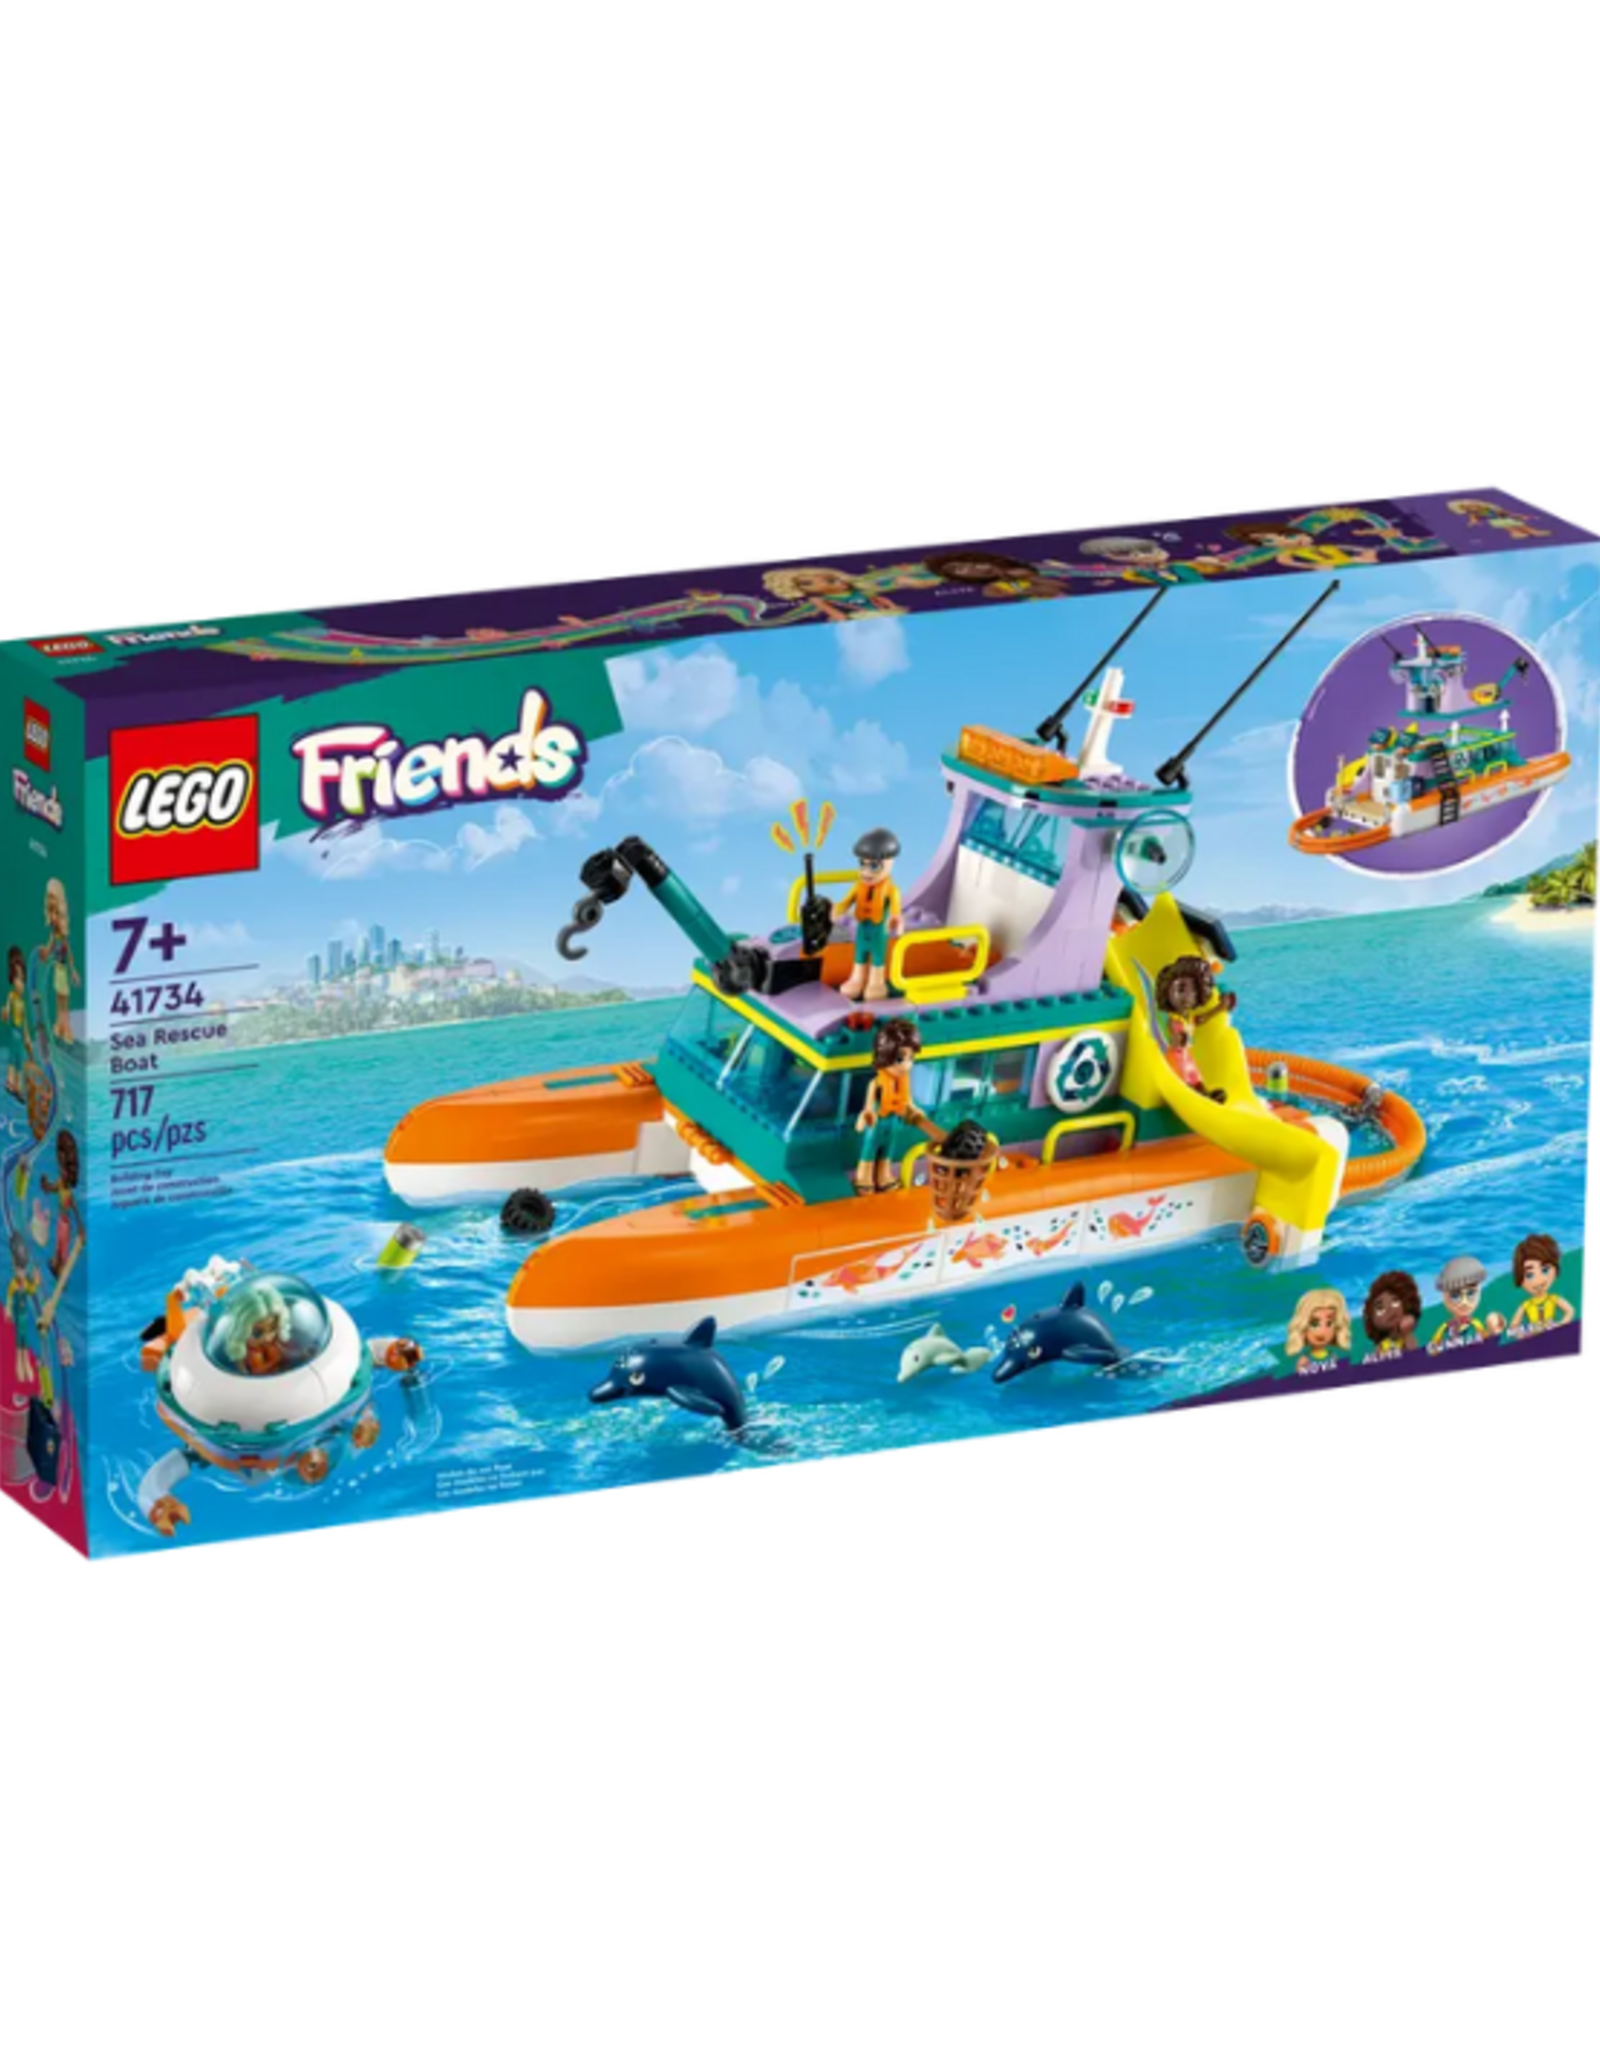 Lego Lego - Friends - 41734 - Sea Rescue Boat